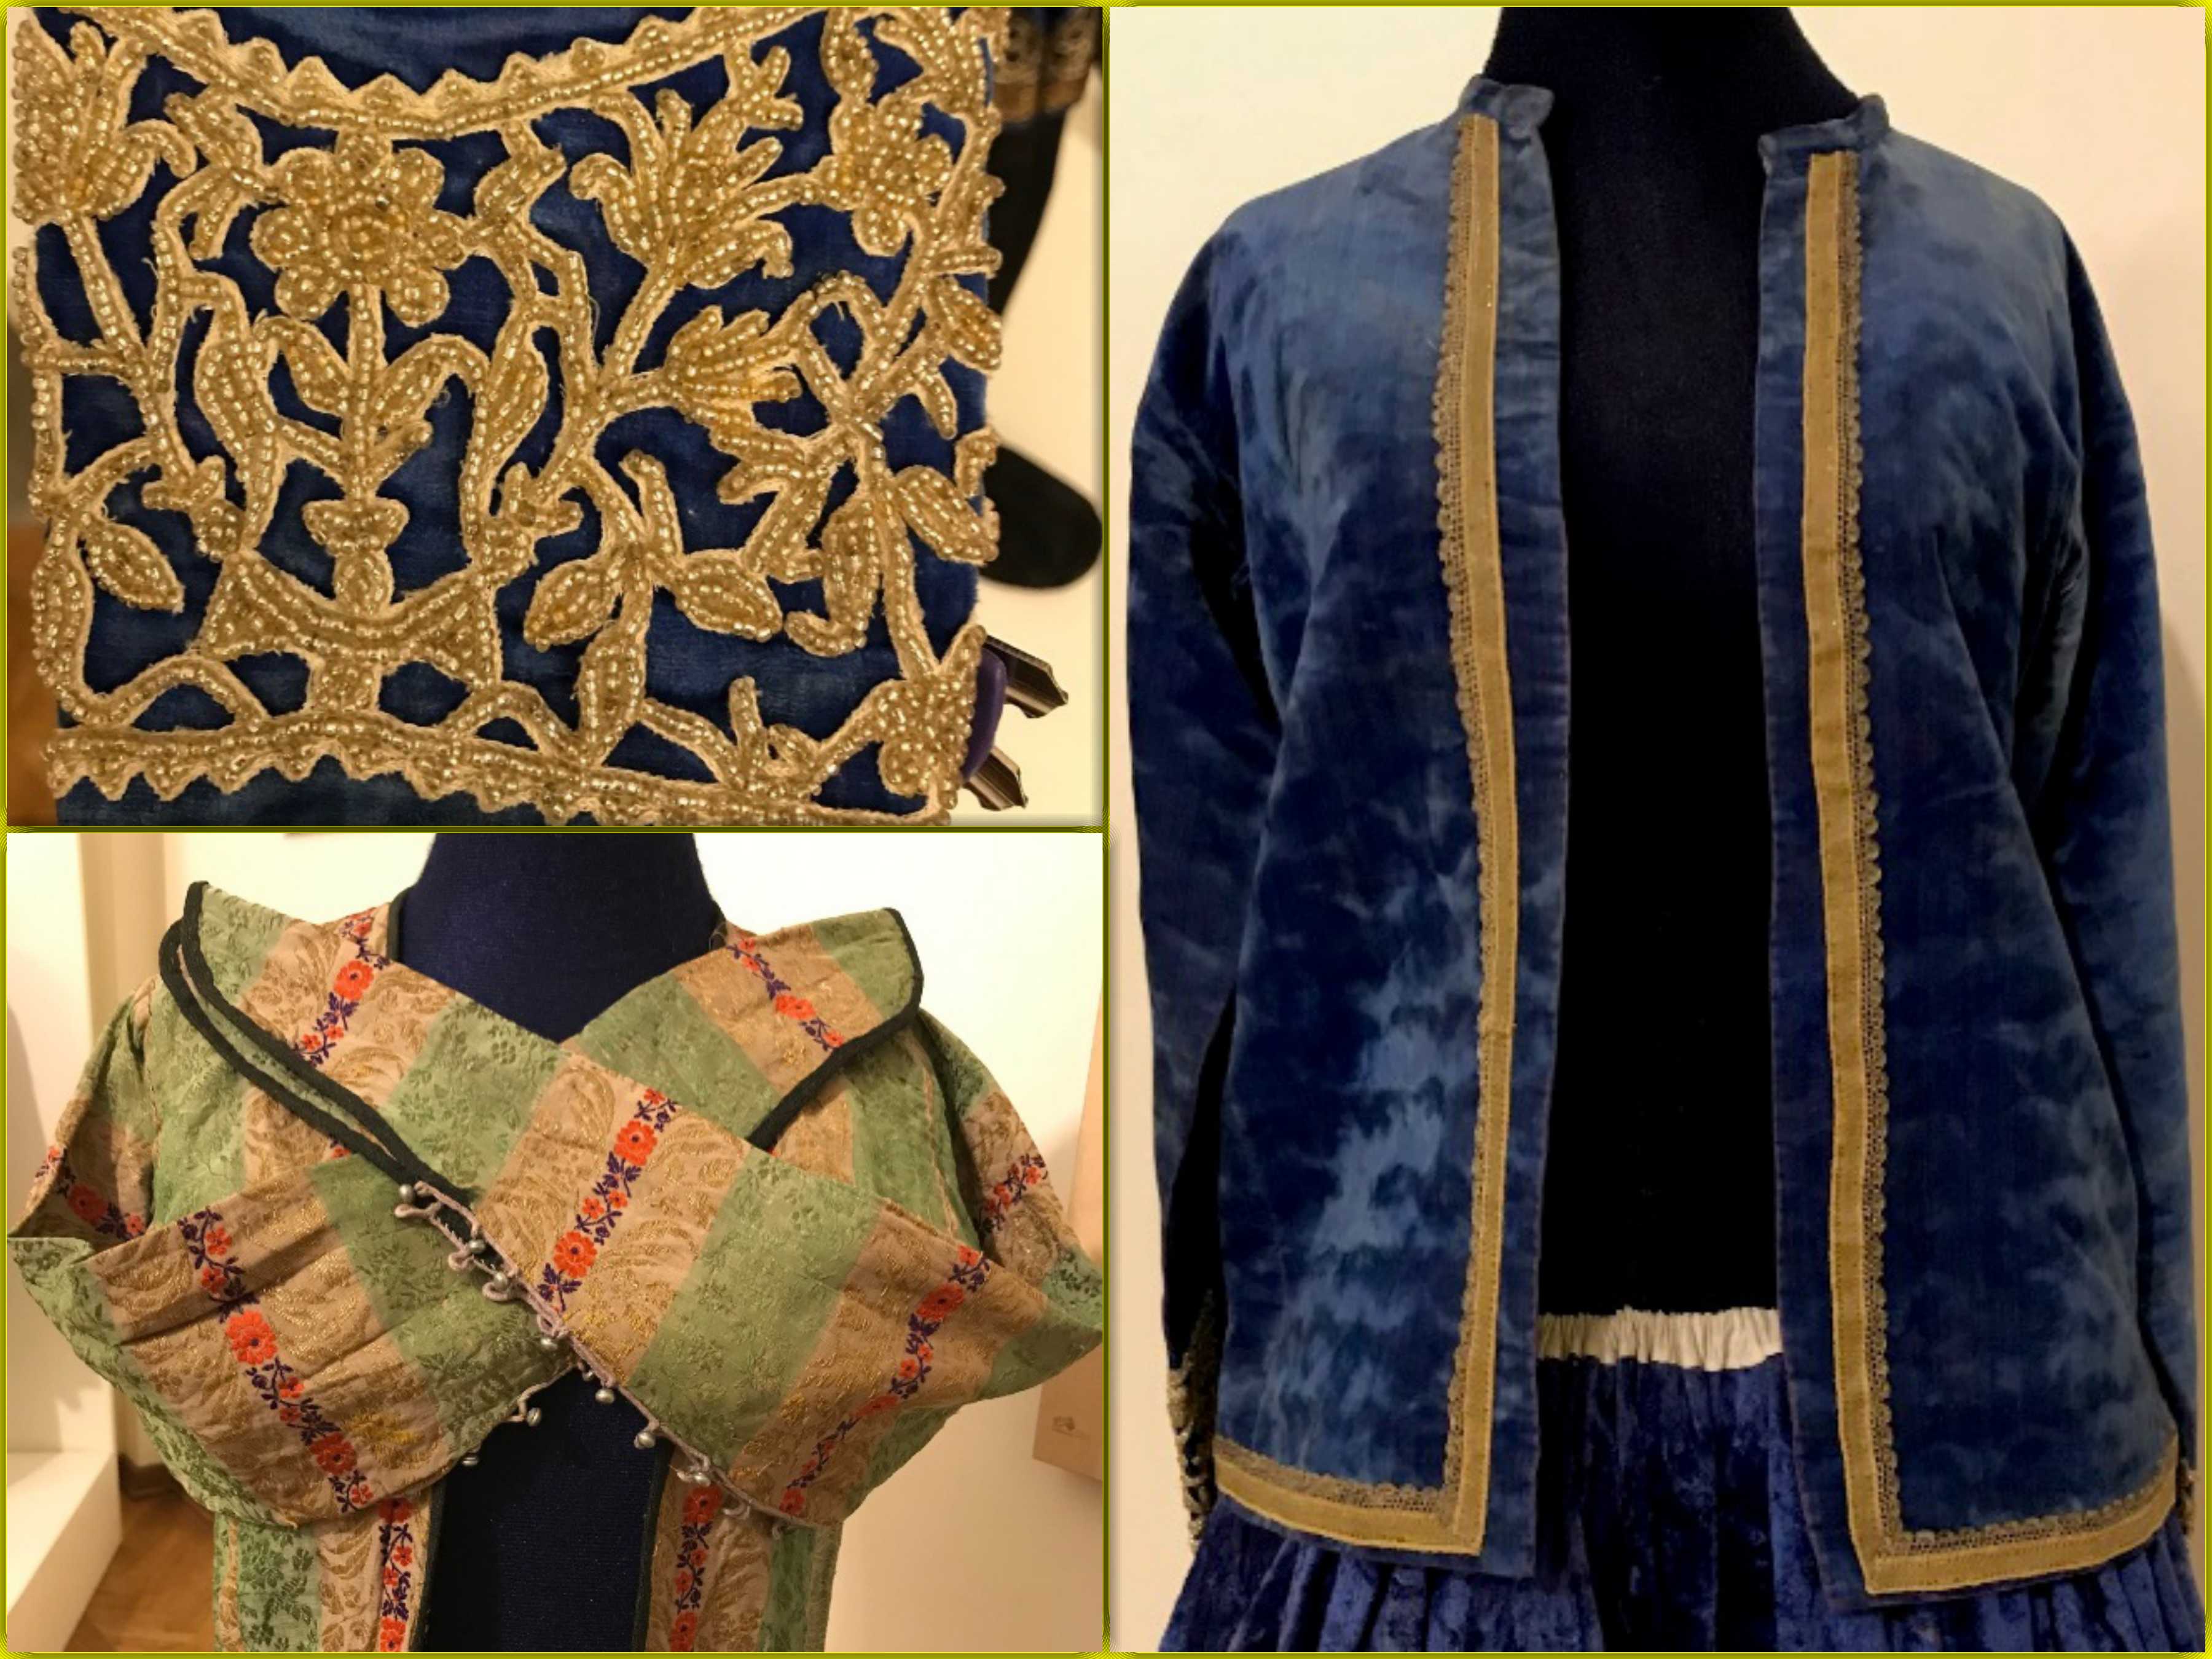 اَرْخالُق ،پوشش سنتی قاجاری موزه پوشاک سلطنتی